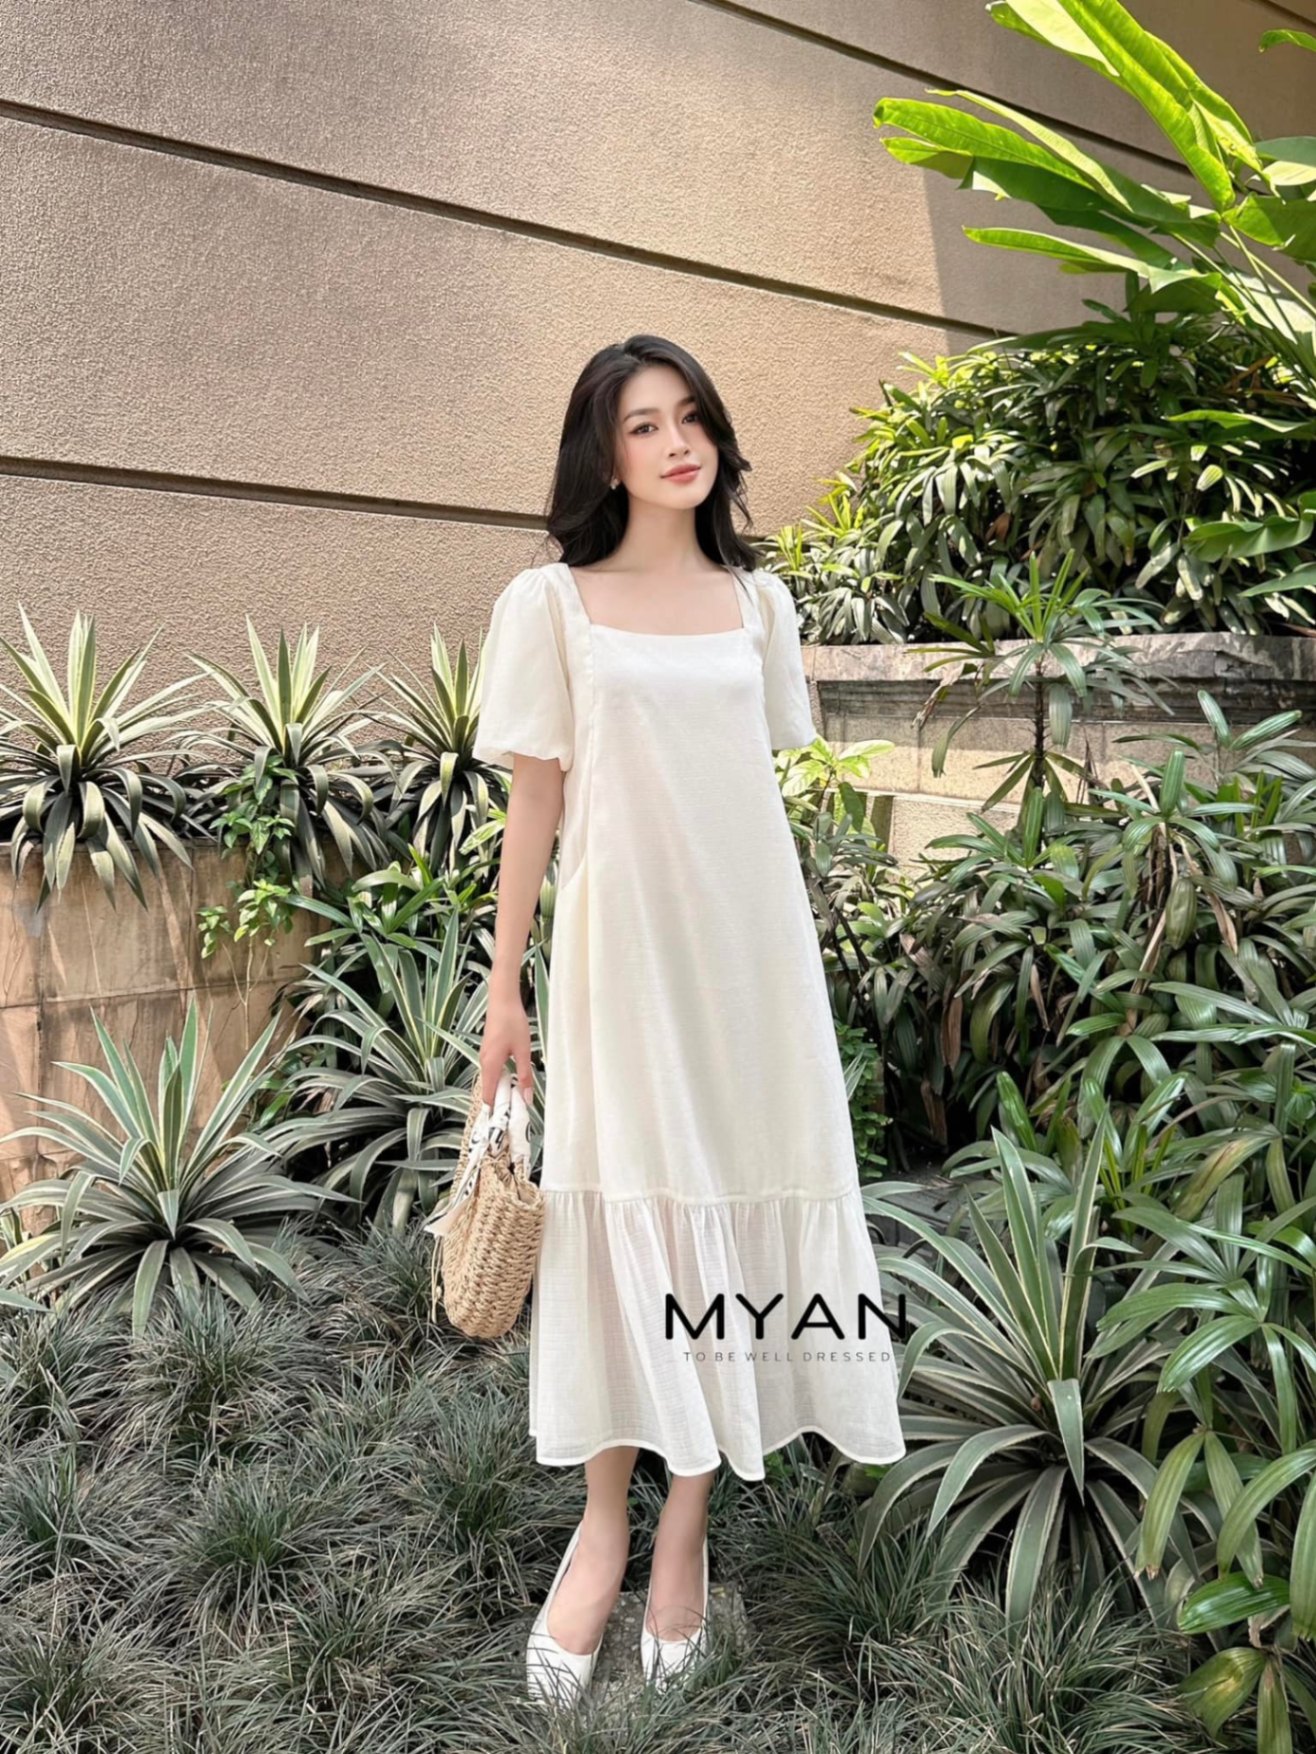 MS899 Váy đầm cổ vuông tay bồng chiết eo dáng xòe thanh lịch | Phu Linh -  Fashion & More